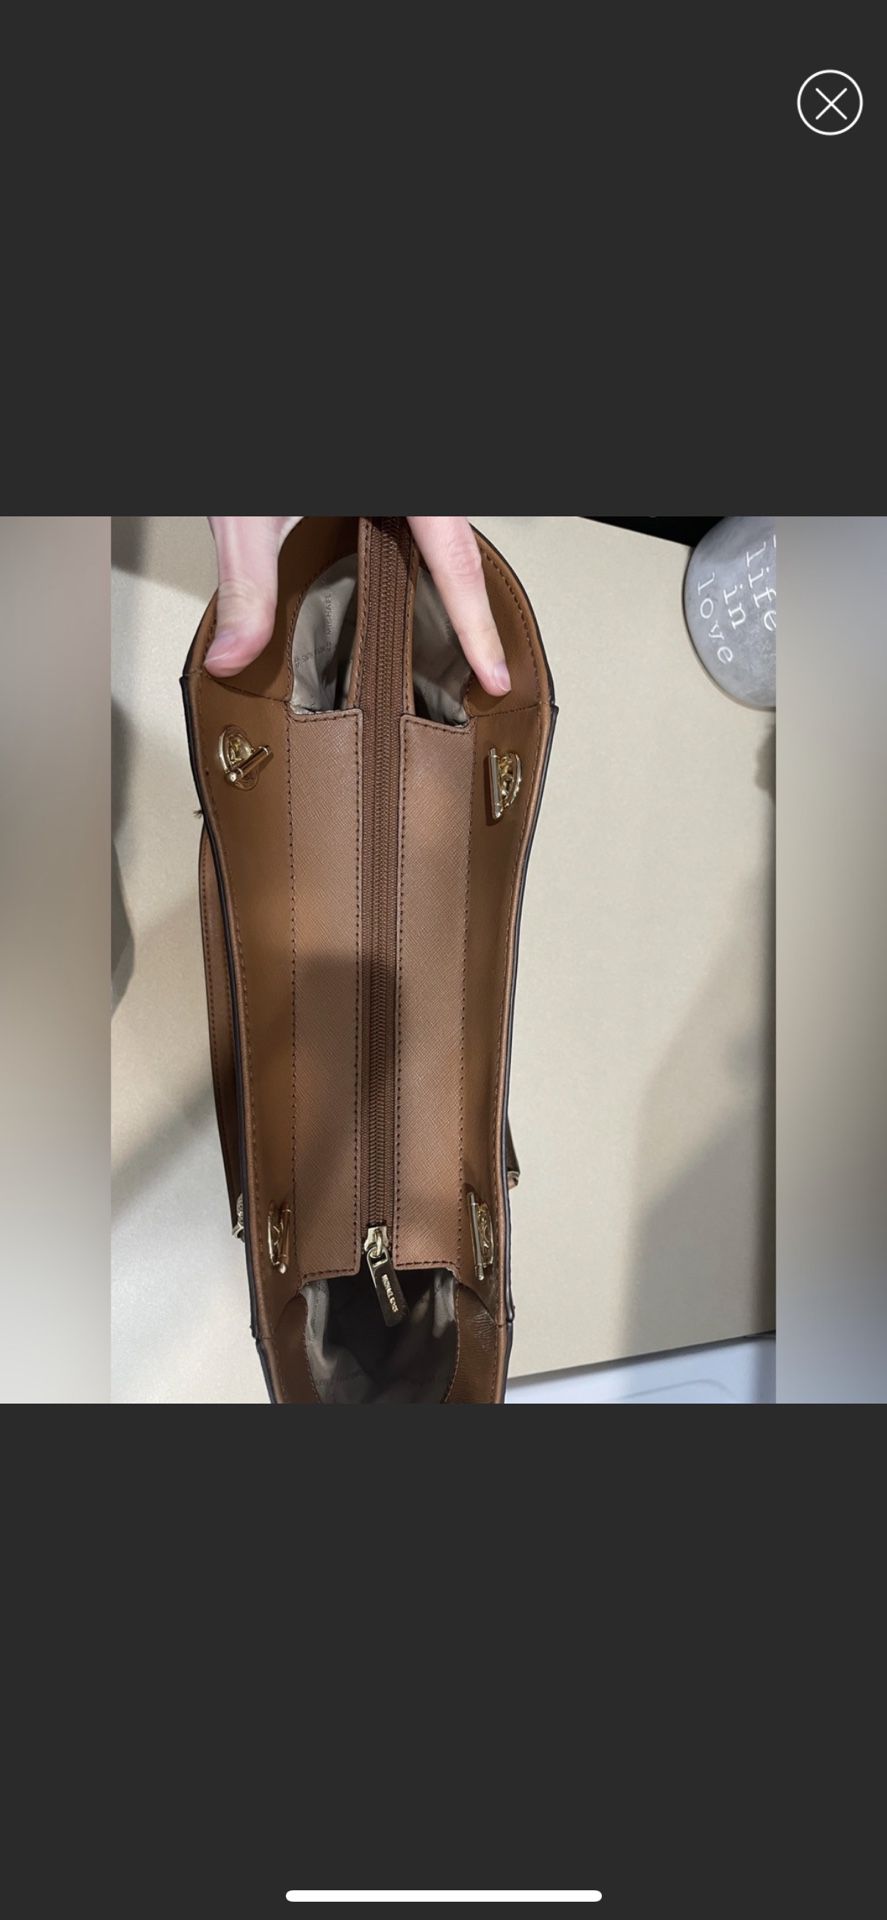 Jet Set Large Saffiano Leather Shoulder Bag for Sale in Moreno Valley, CA -  OfferUp